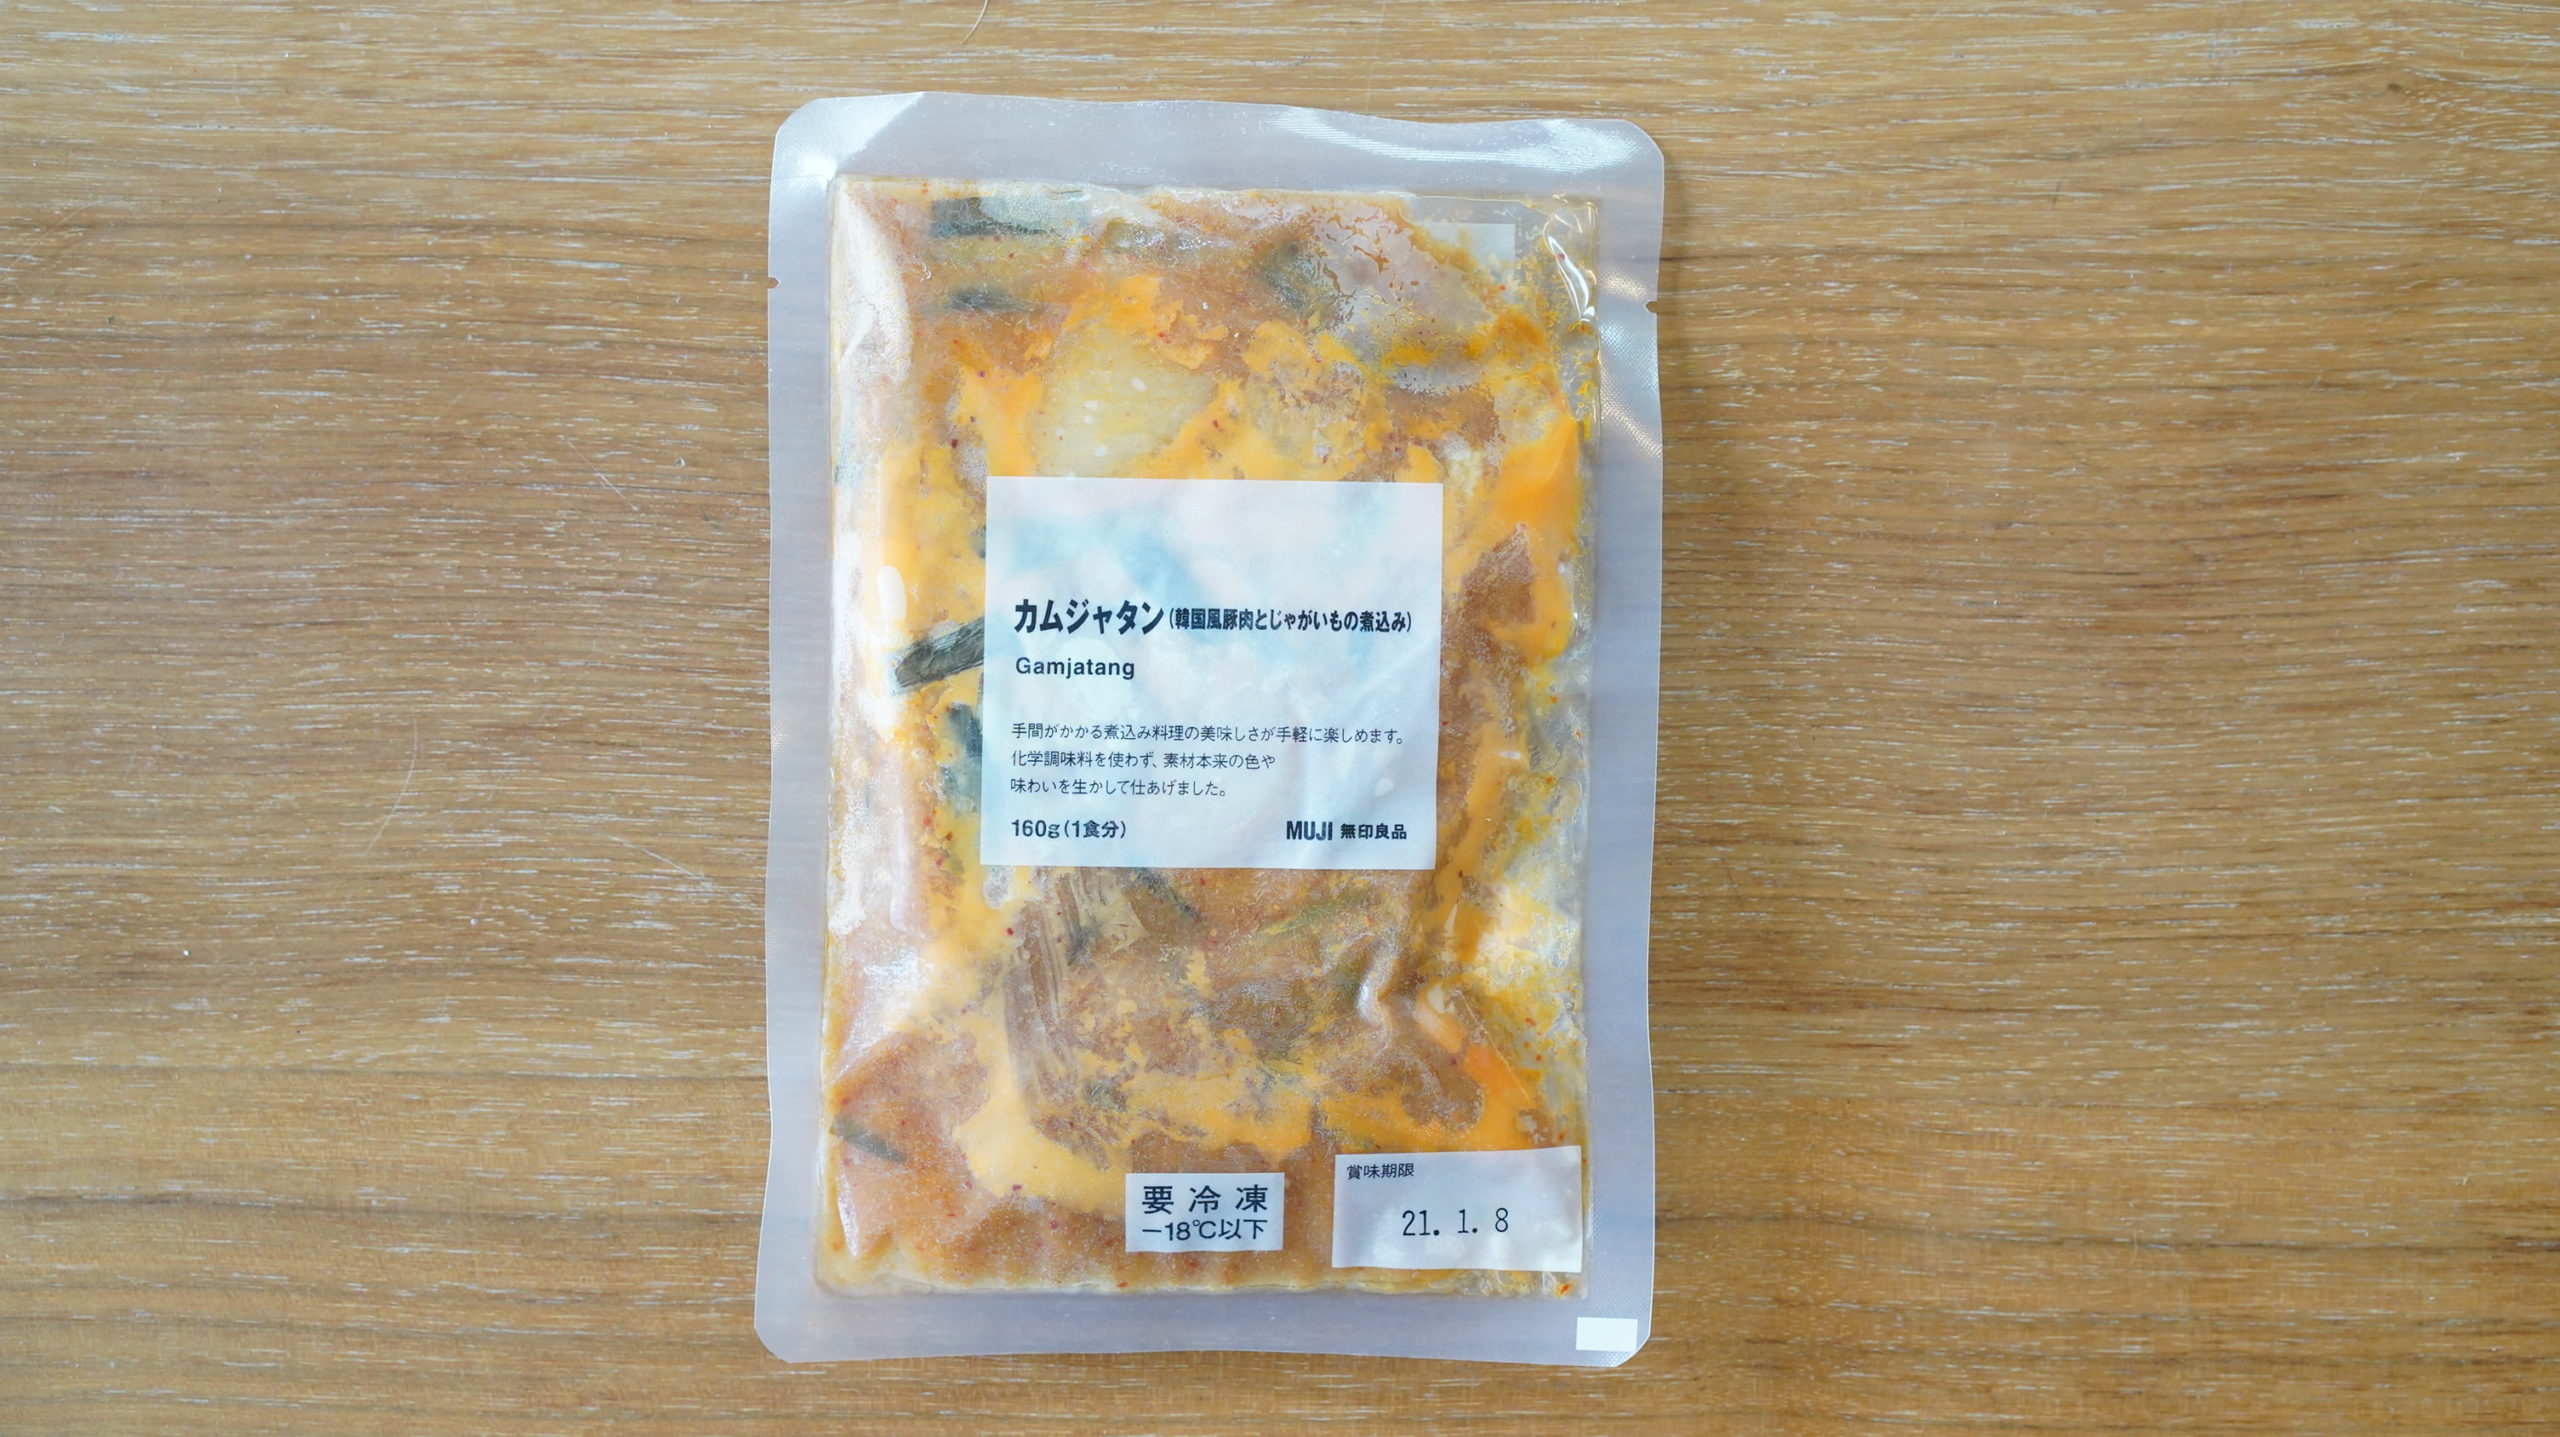 無印良品のおすすめ冷凍食品「カムジャタン（韓国風豚肉とじゃがいもの煮込み）」のパッケージの写真